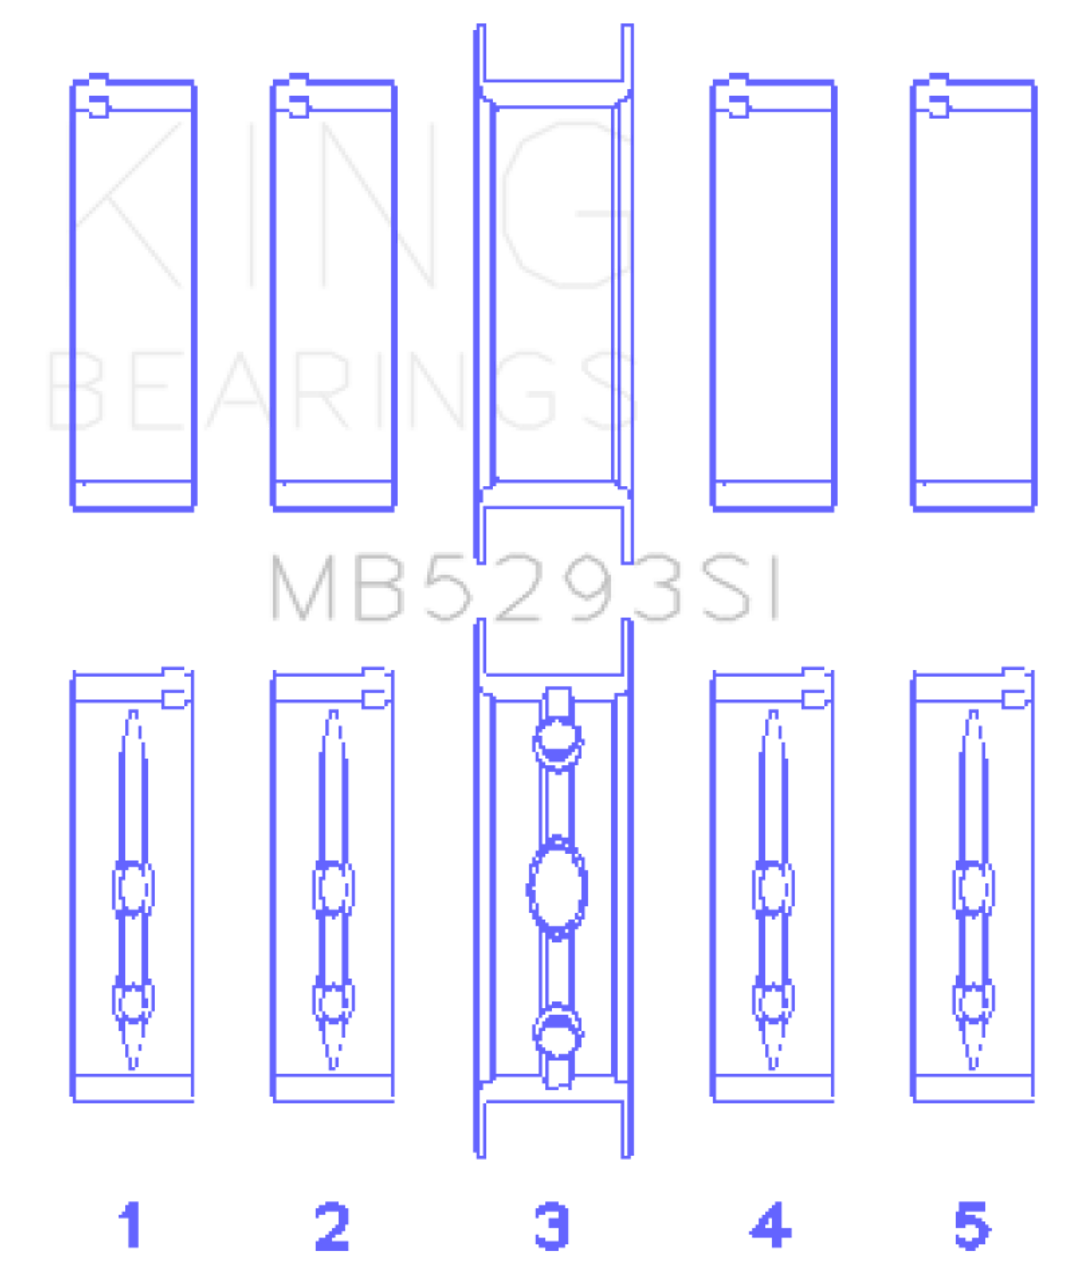 King GM 294/325/345/364CI 4.8/5.3/5.7/6.0L L20/LS1/LS2/LS4/LS6 (Size 040) Main Bearing Set - MB5293SI 040 Photo - Primary